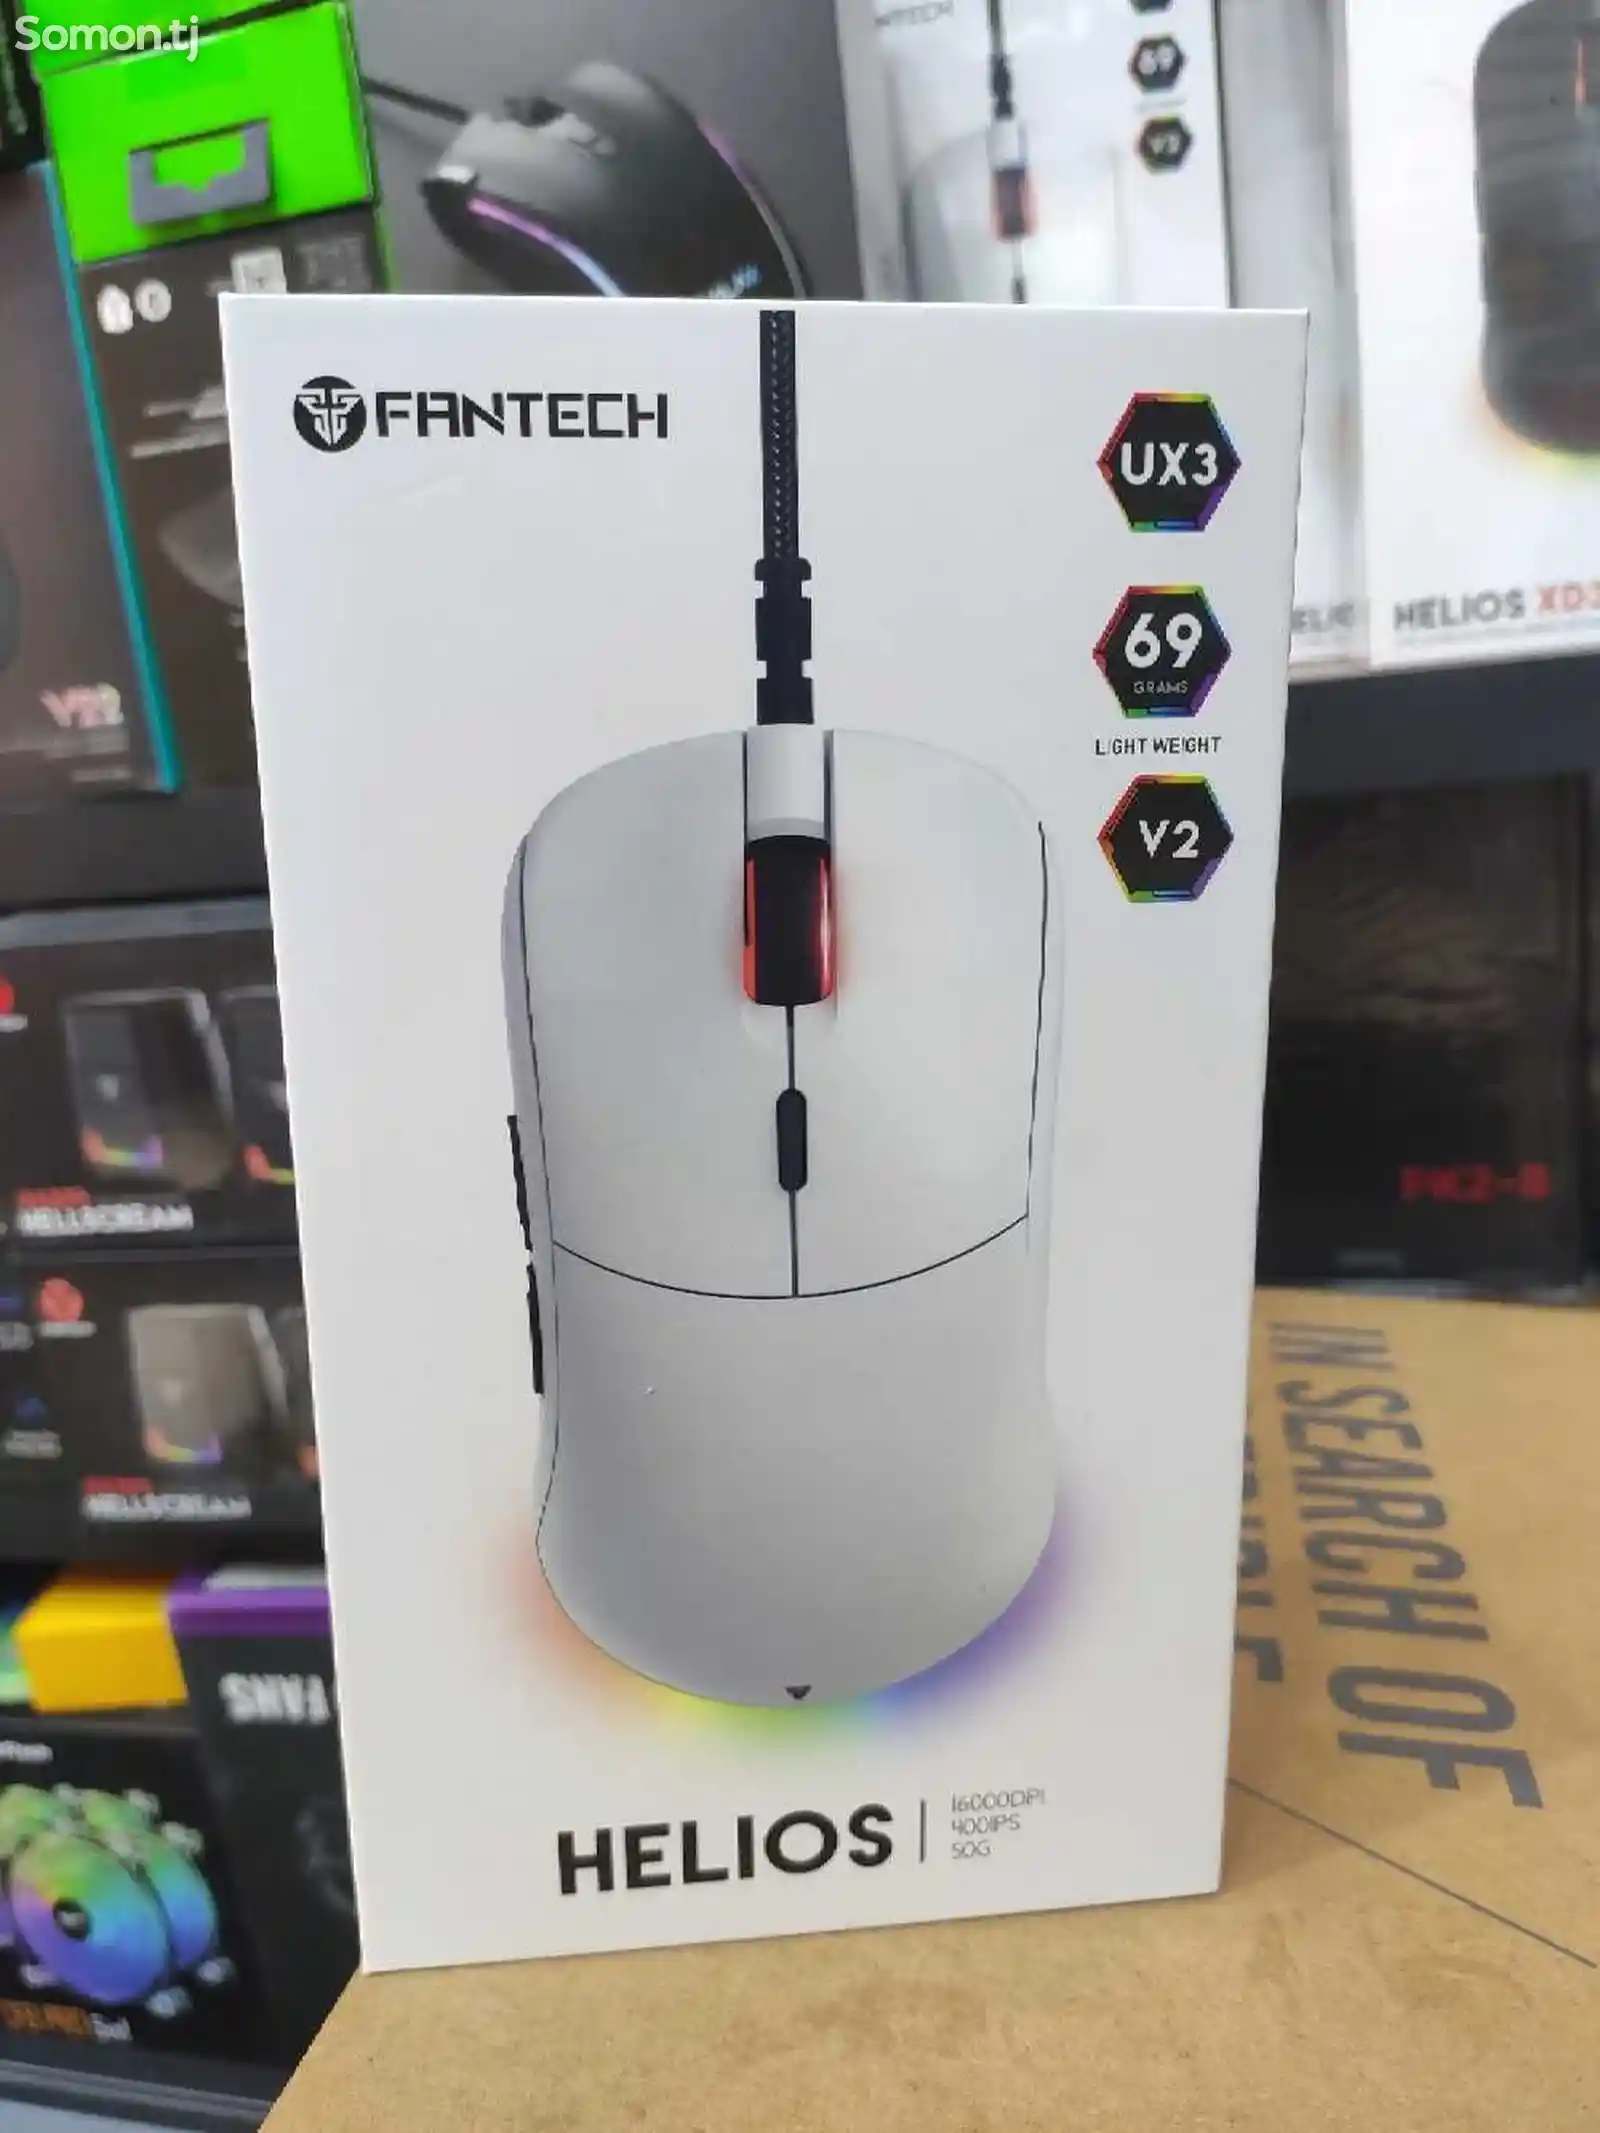 Мышка Игровой Fantech HELIOS-1